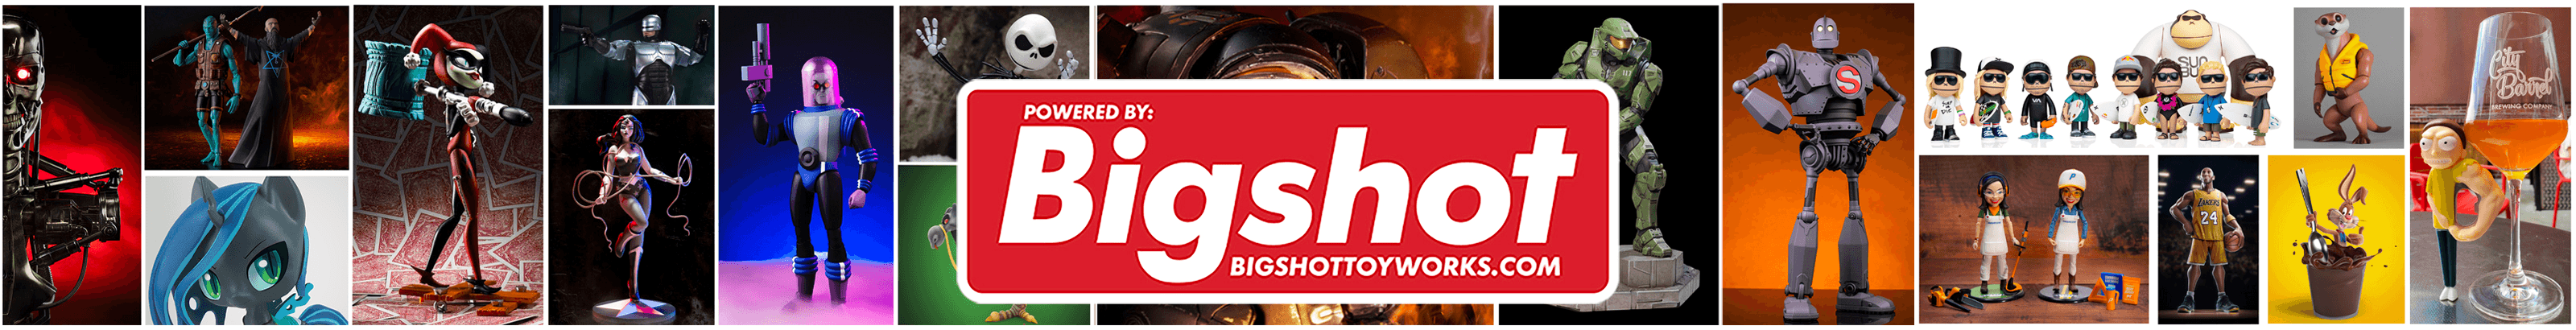 BigshotToyworks バナー